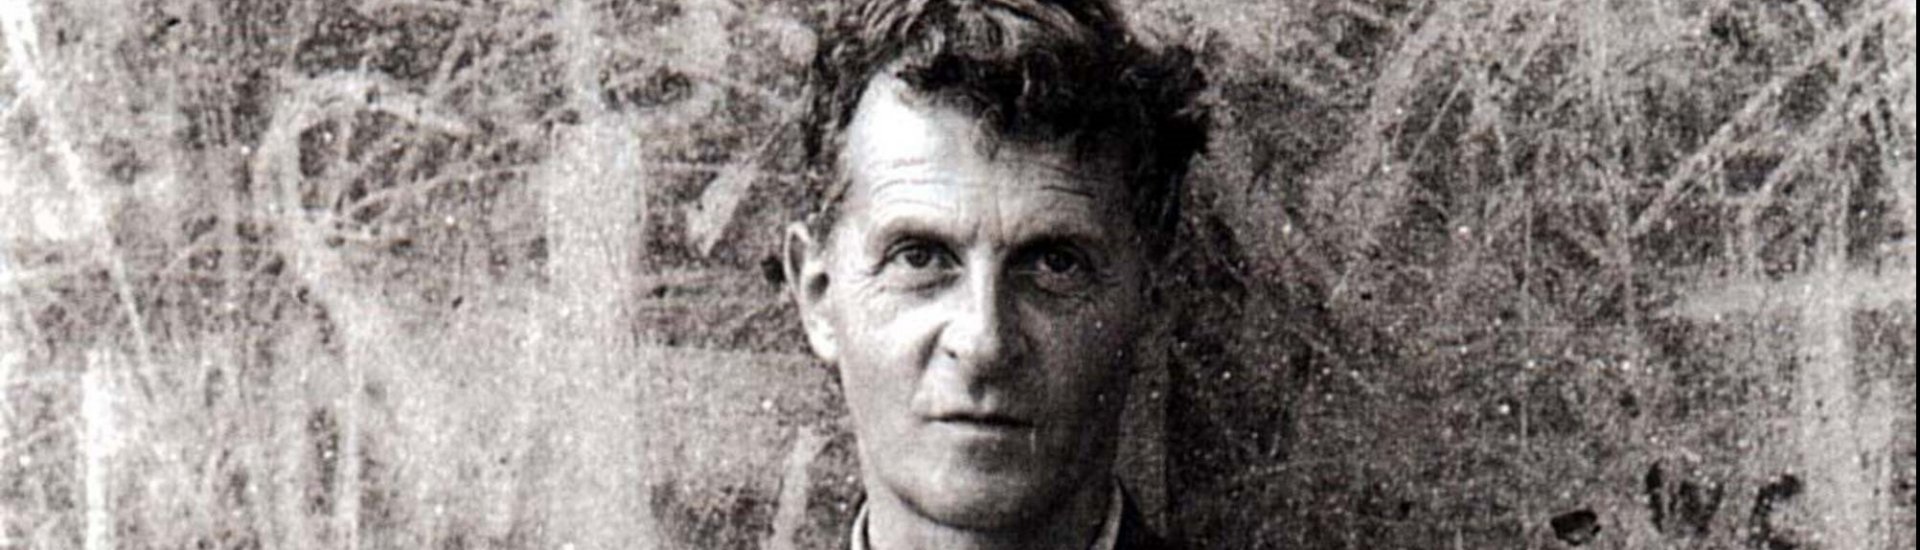 Een portret van de filosoof Ludwig Wittgenstein.